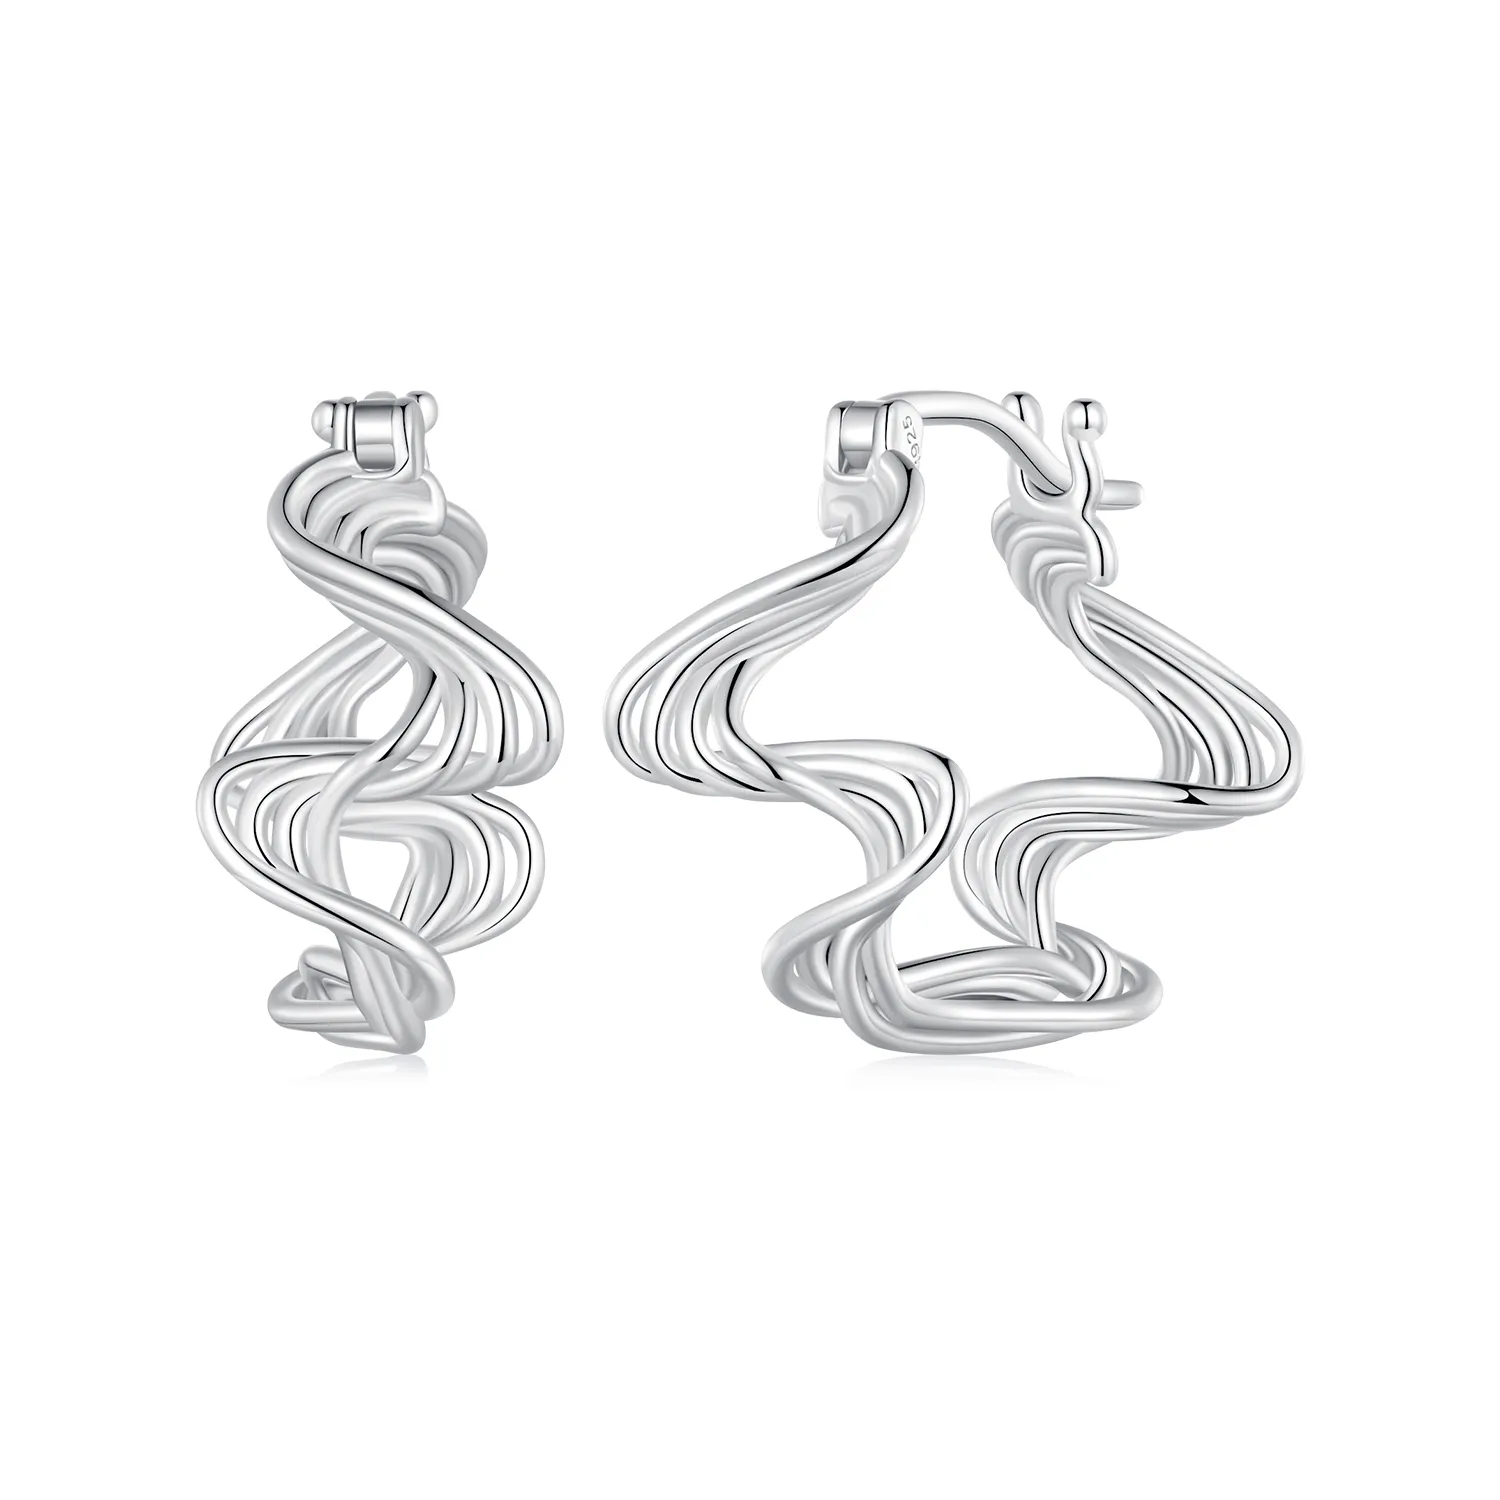 Pandora Style Wave Hoop Earrings - BSE907